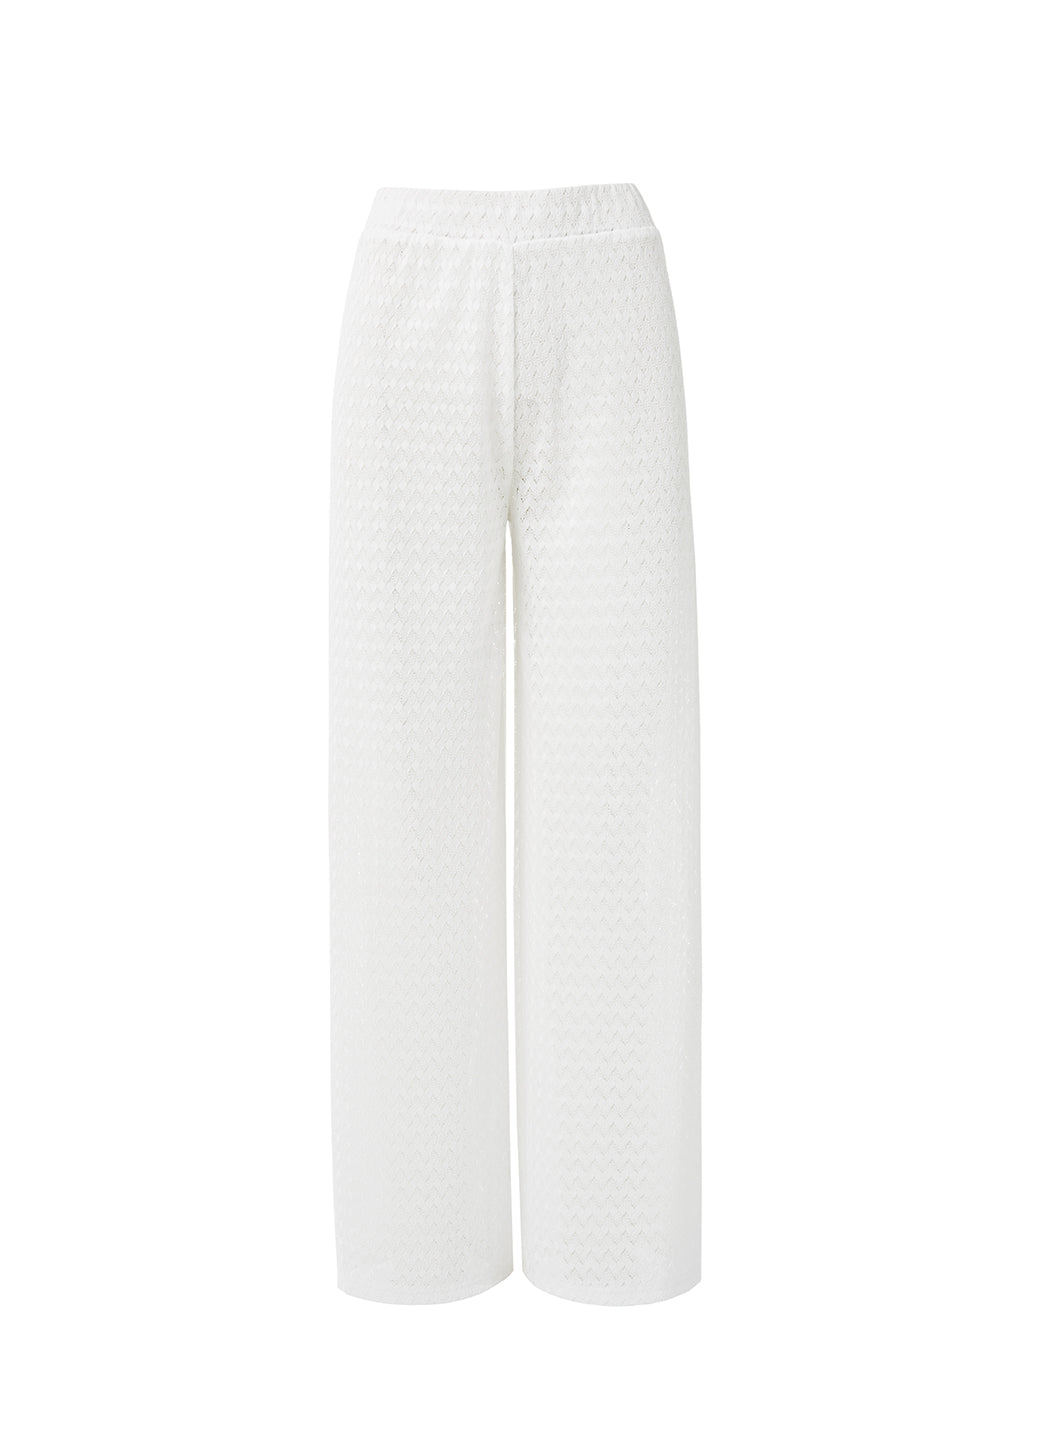 sienna-white-trouser_cutouts_2024